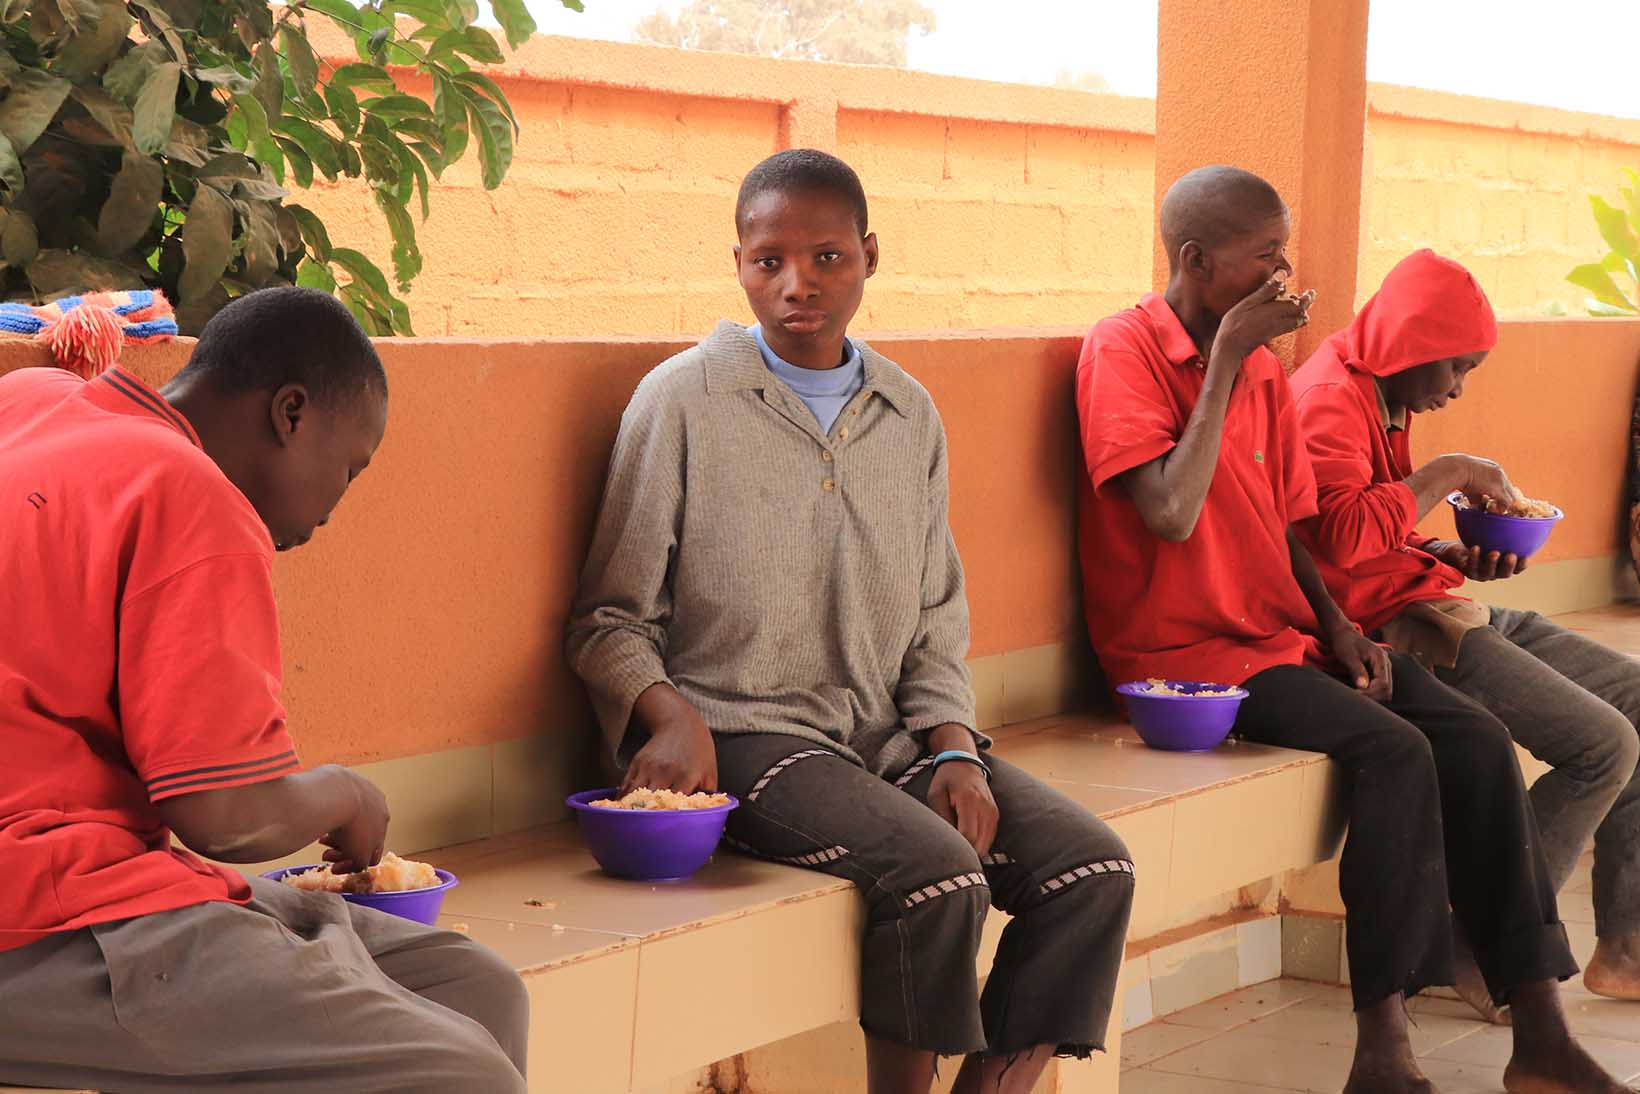 Mehrere Menschen aus Burkina Faso, die vorübergehend in einem Zentrum wohnen, essen aus einer Reis aus einer Schale.